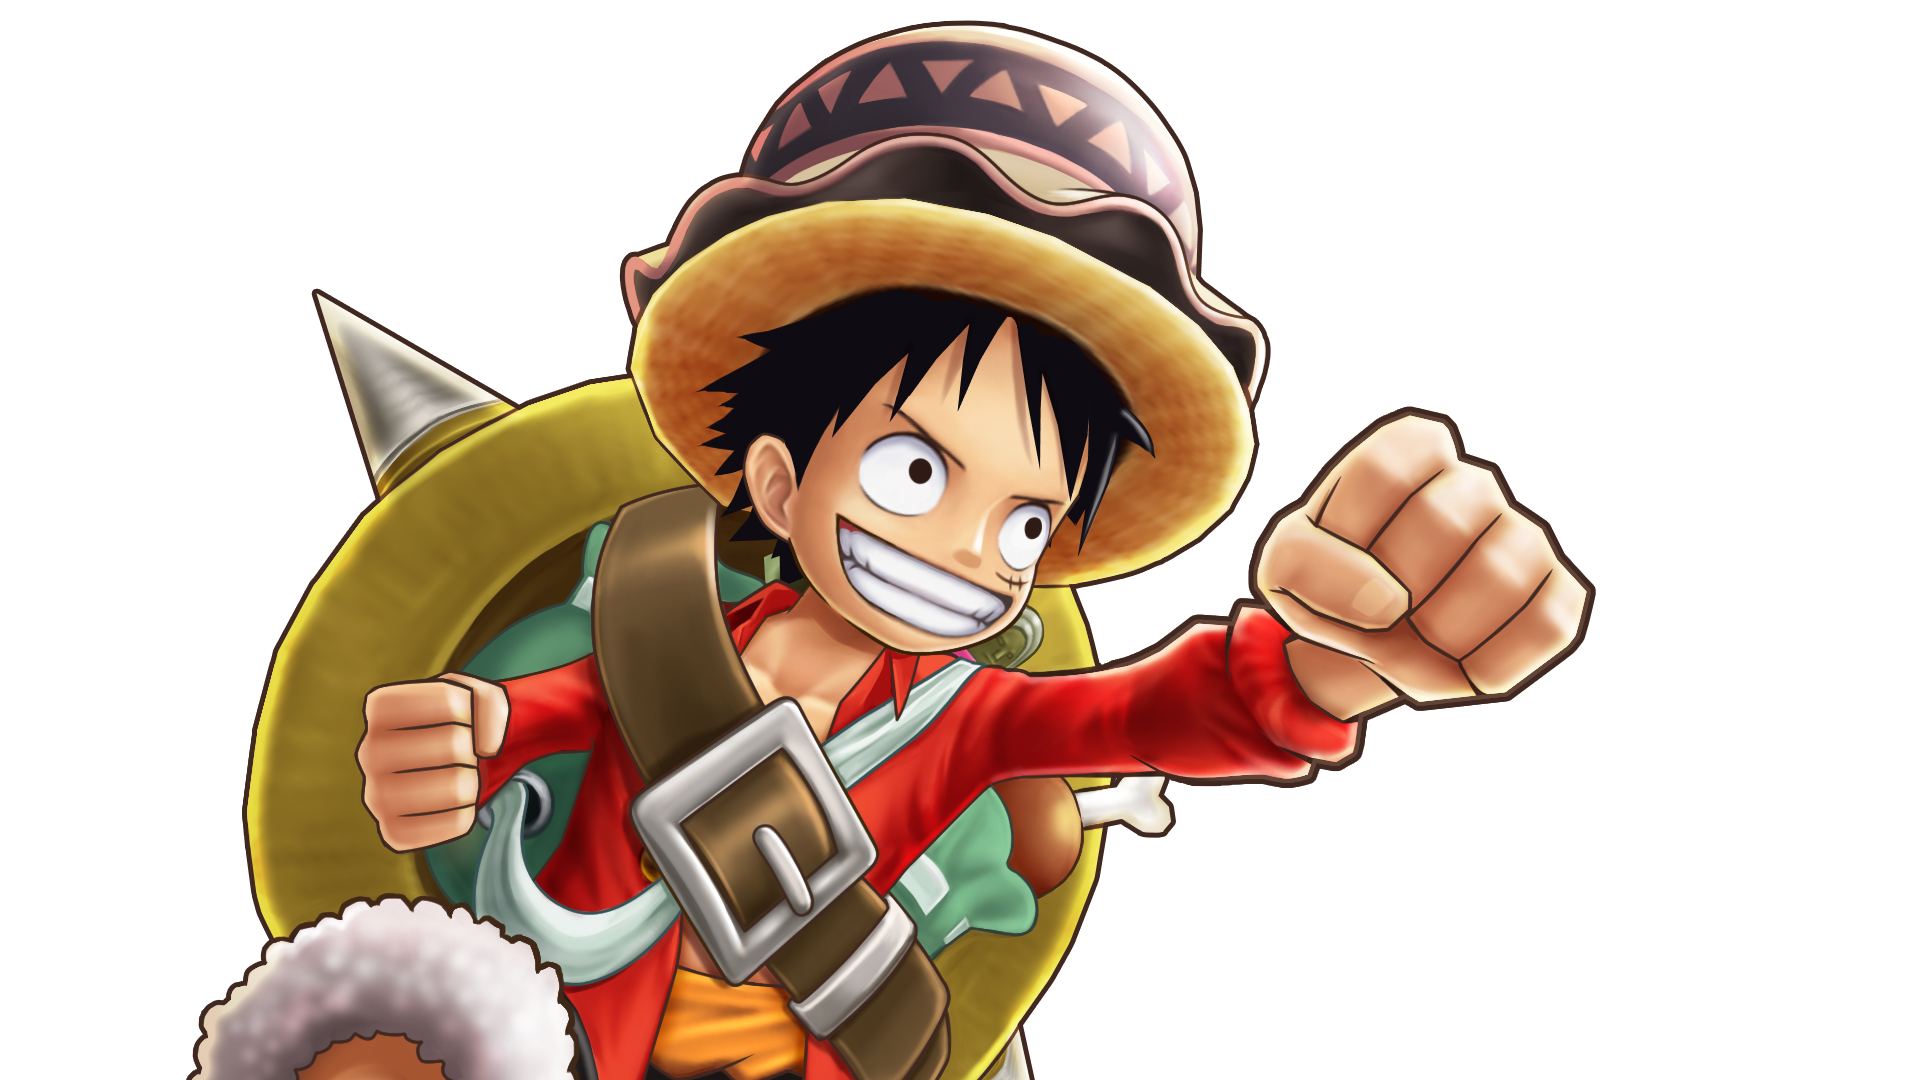 8キャラメダル ルフィ 公式 サウスト One Piece サウザンドストーム最速攻略wiki